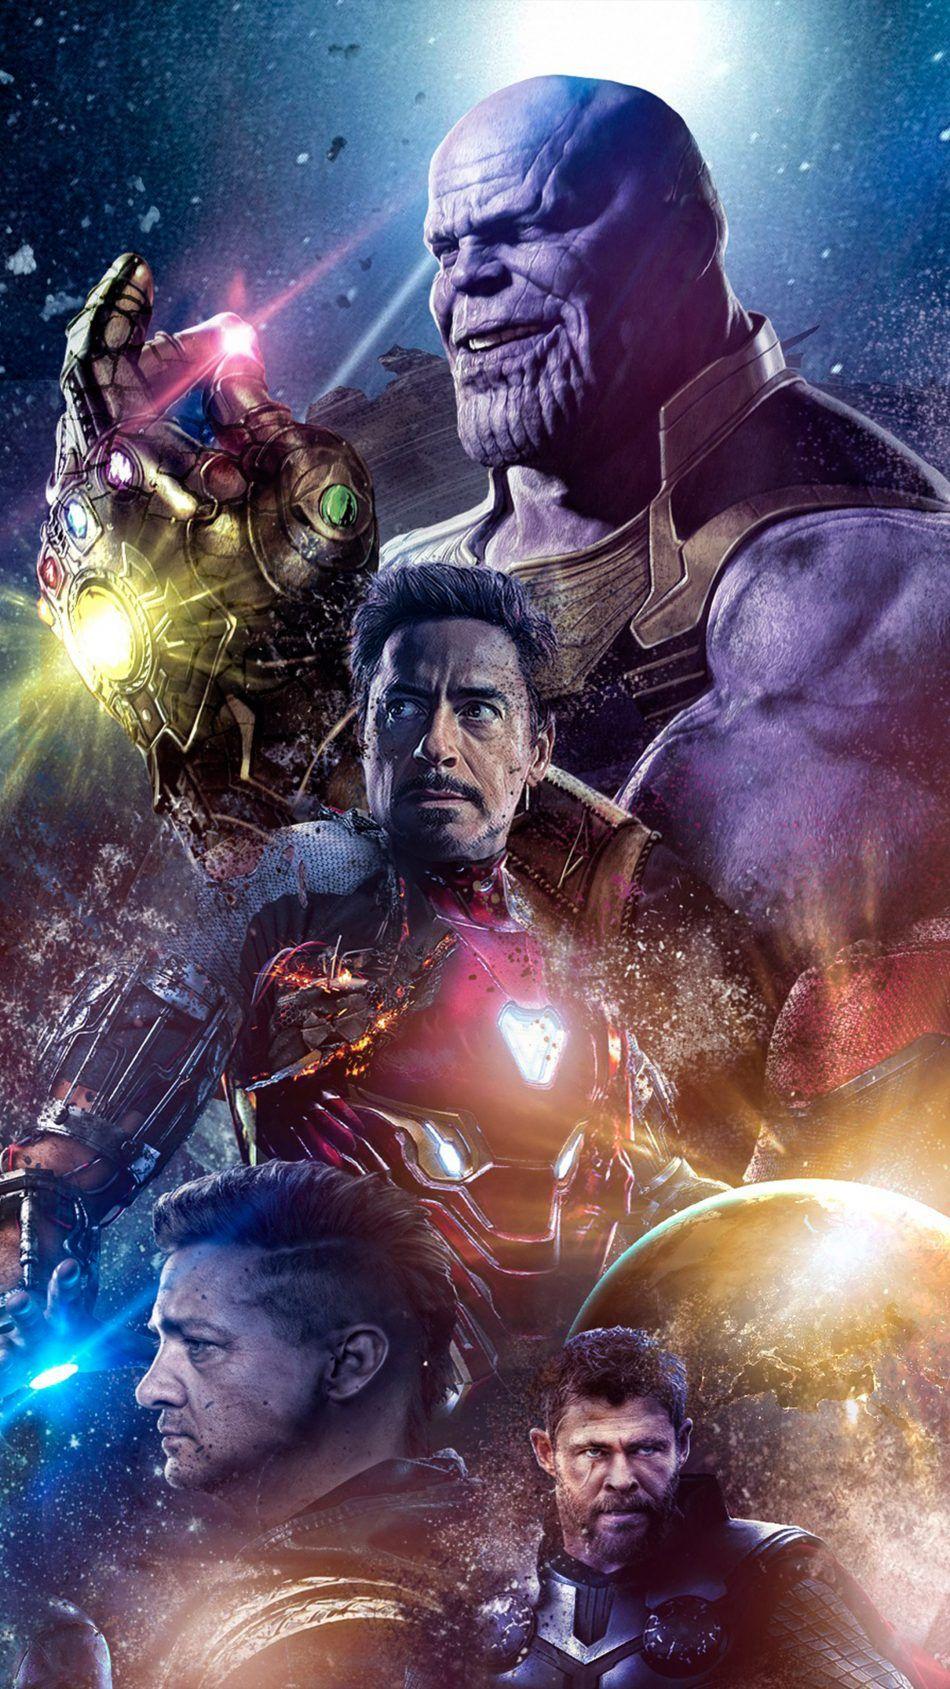 Avengers Endgame 2019. Marvel wallpaper, Marvel, Avengers wallpaper